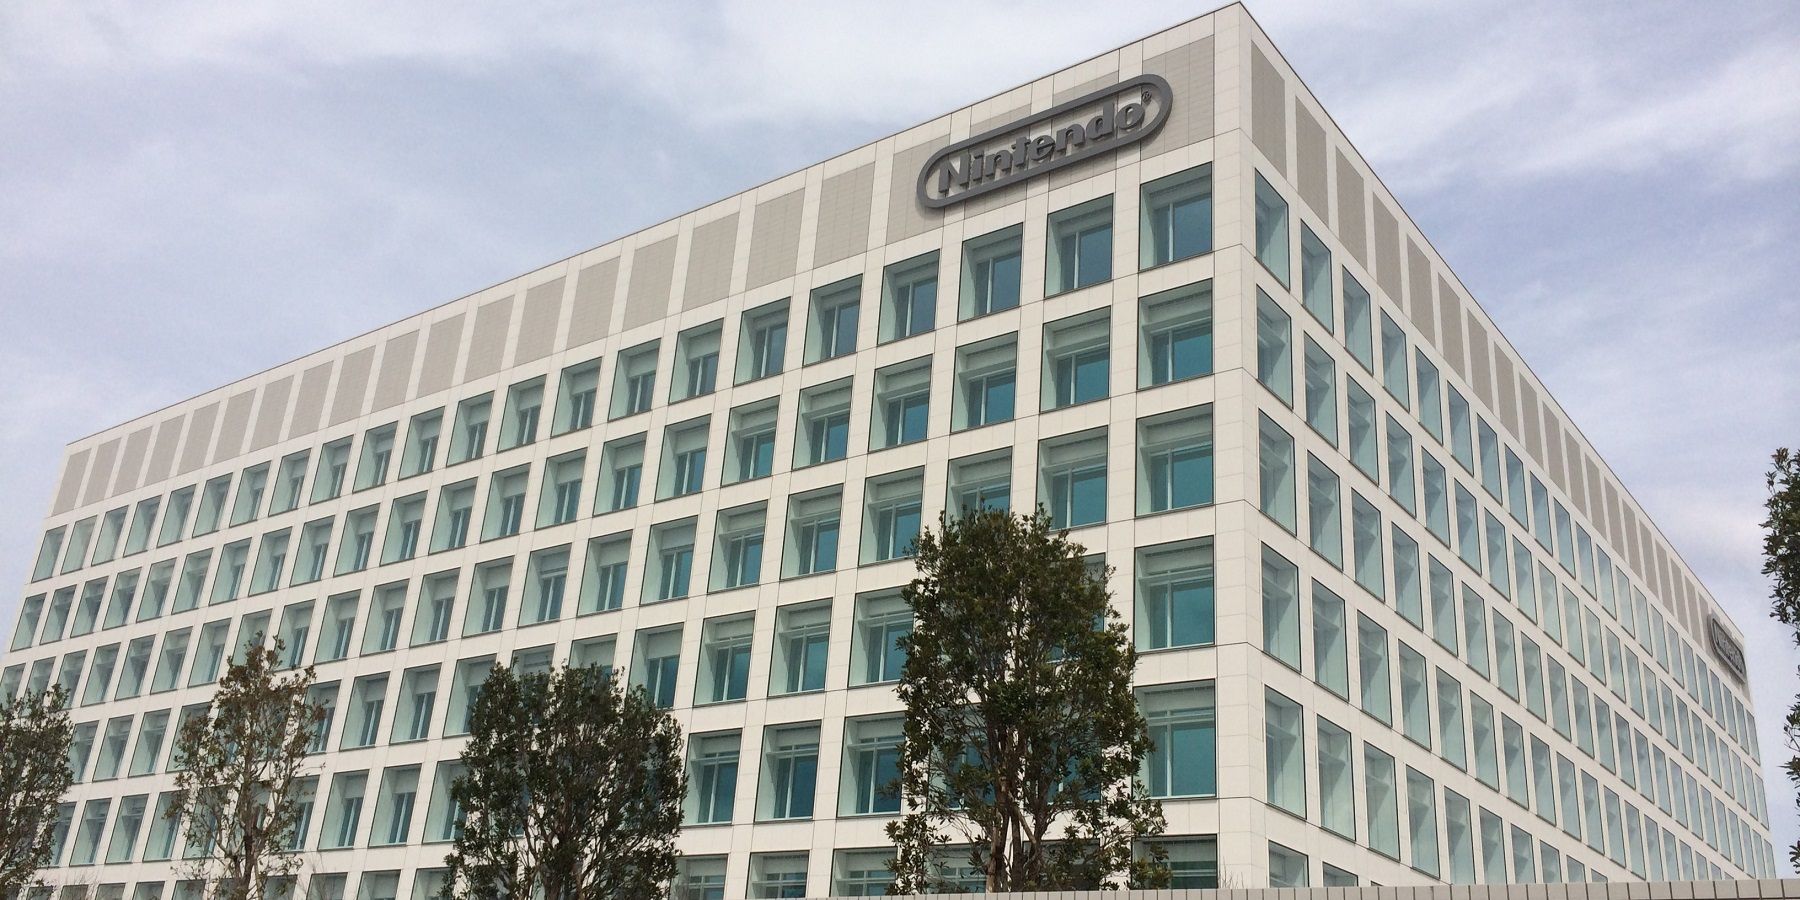 Nintendo HQ